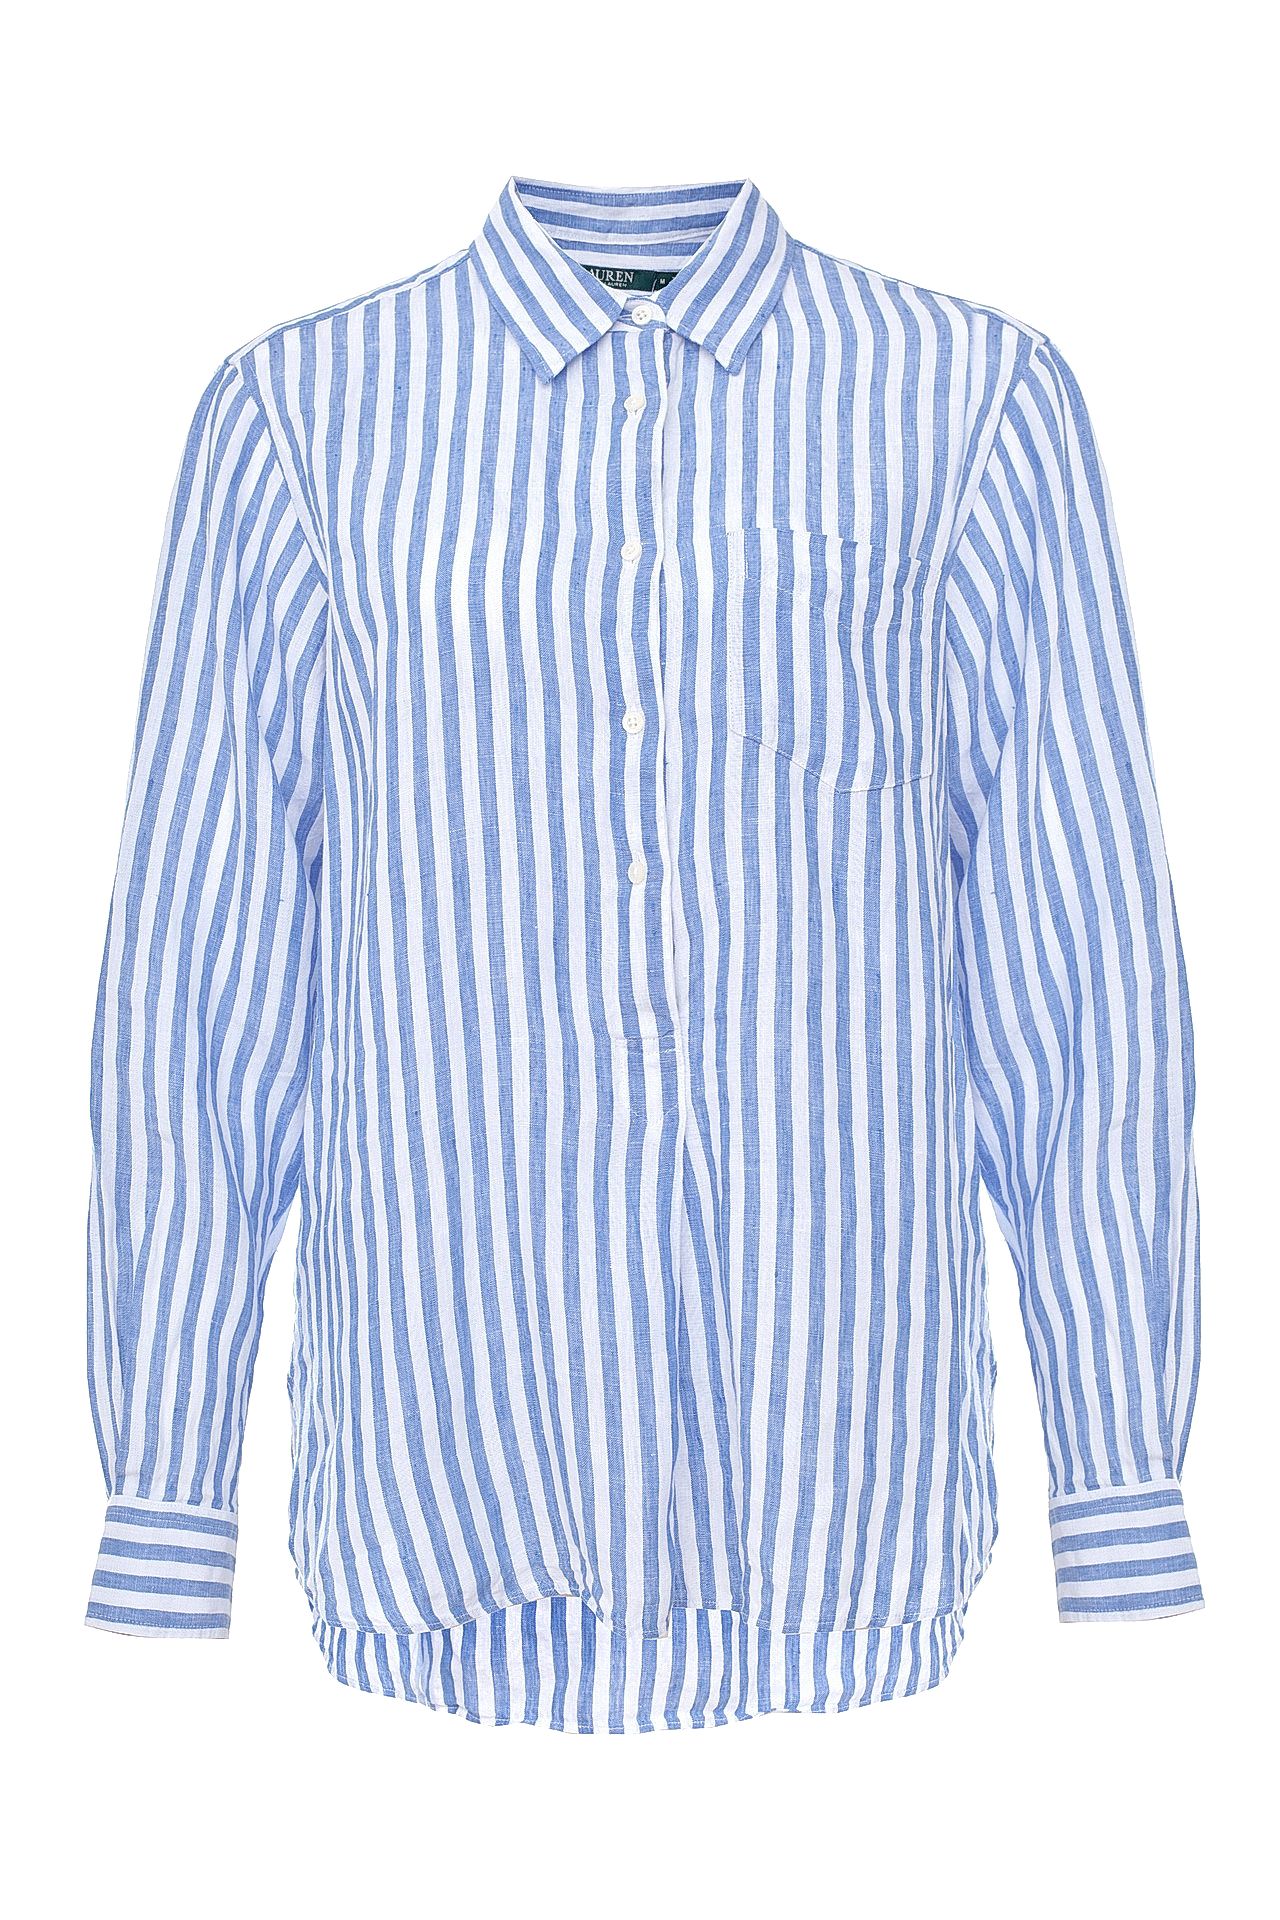 Одежда женская Рубашка POLO RALPH LAUREN (4450610000079/17.2). Купить за 5950 руб.